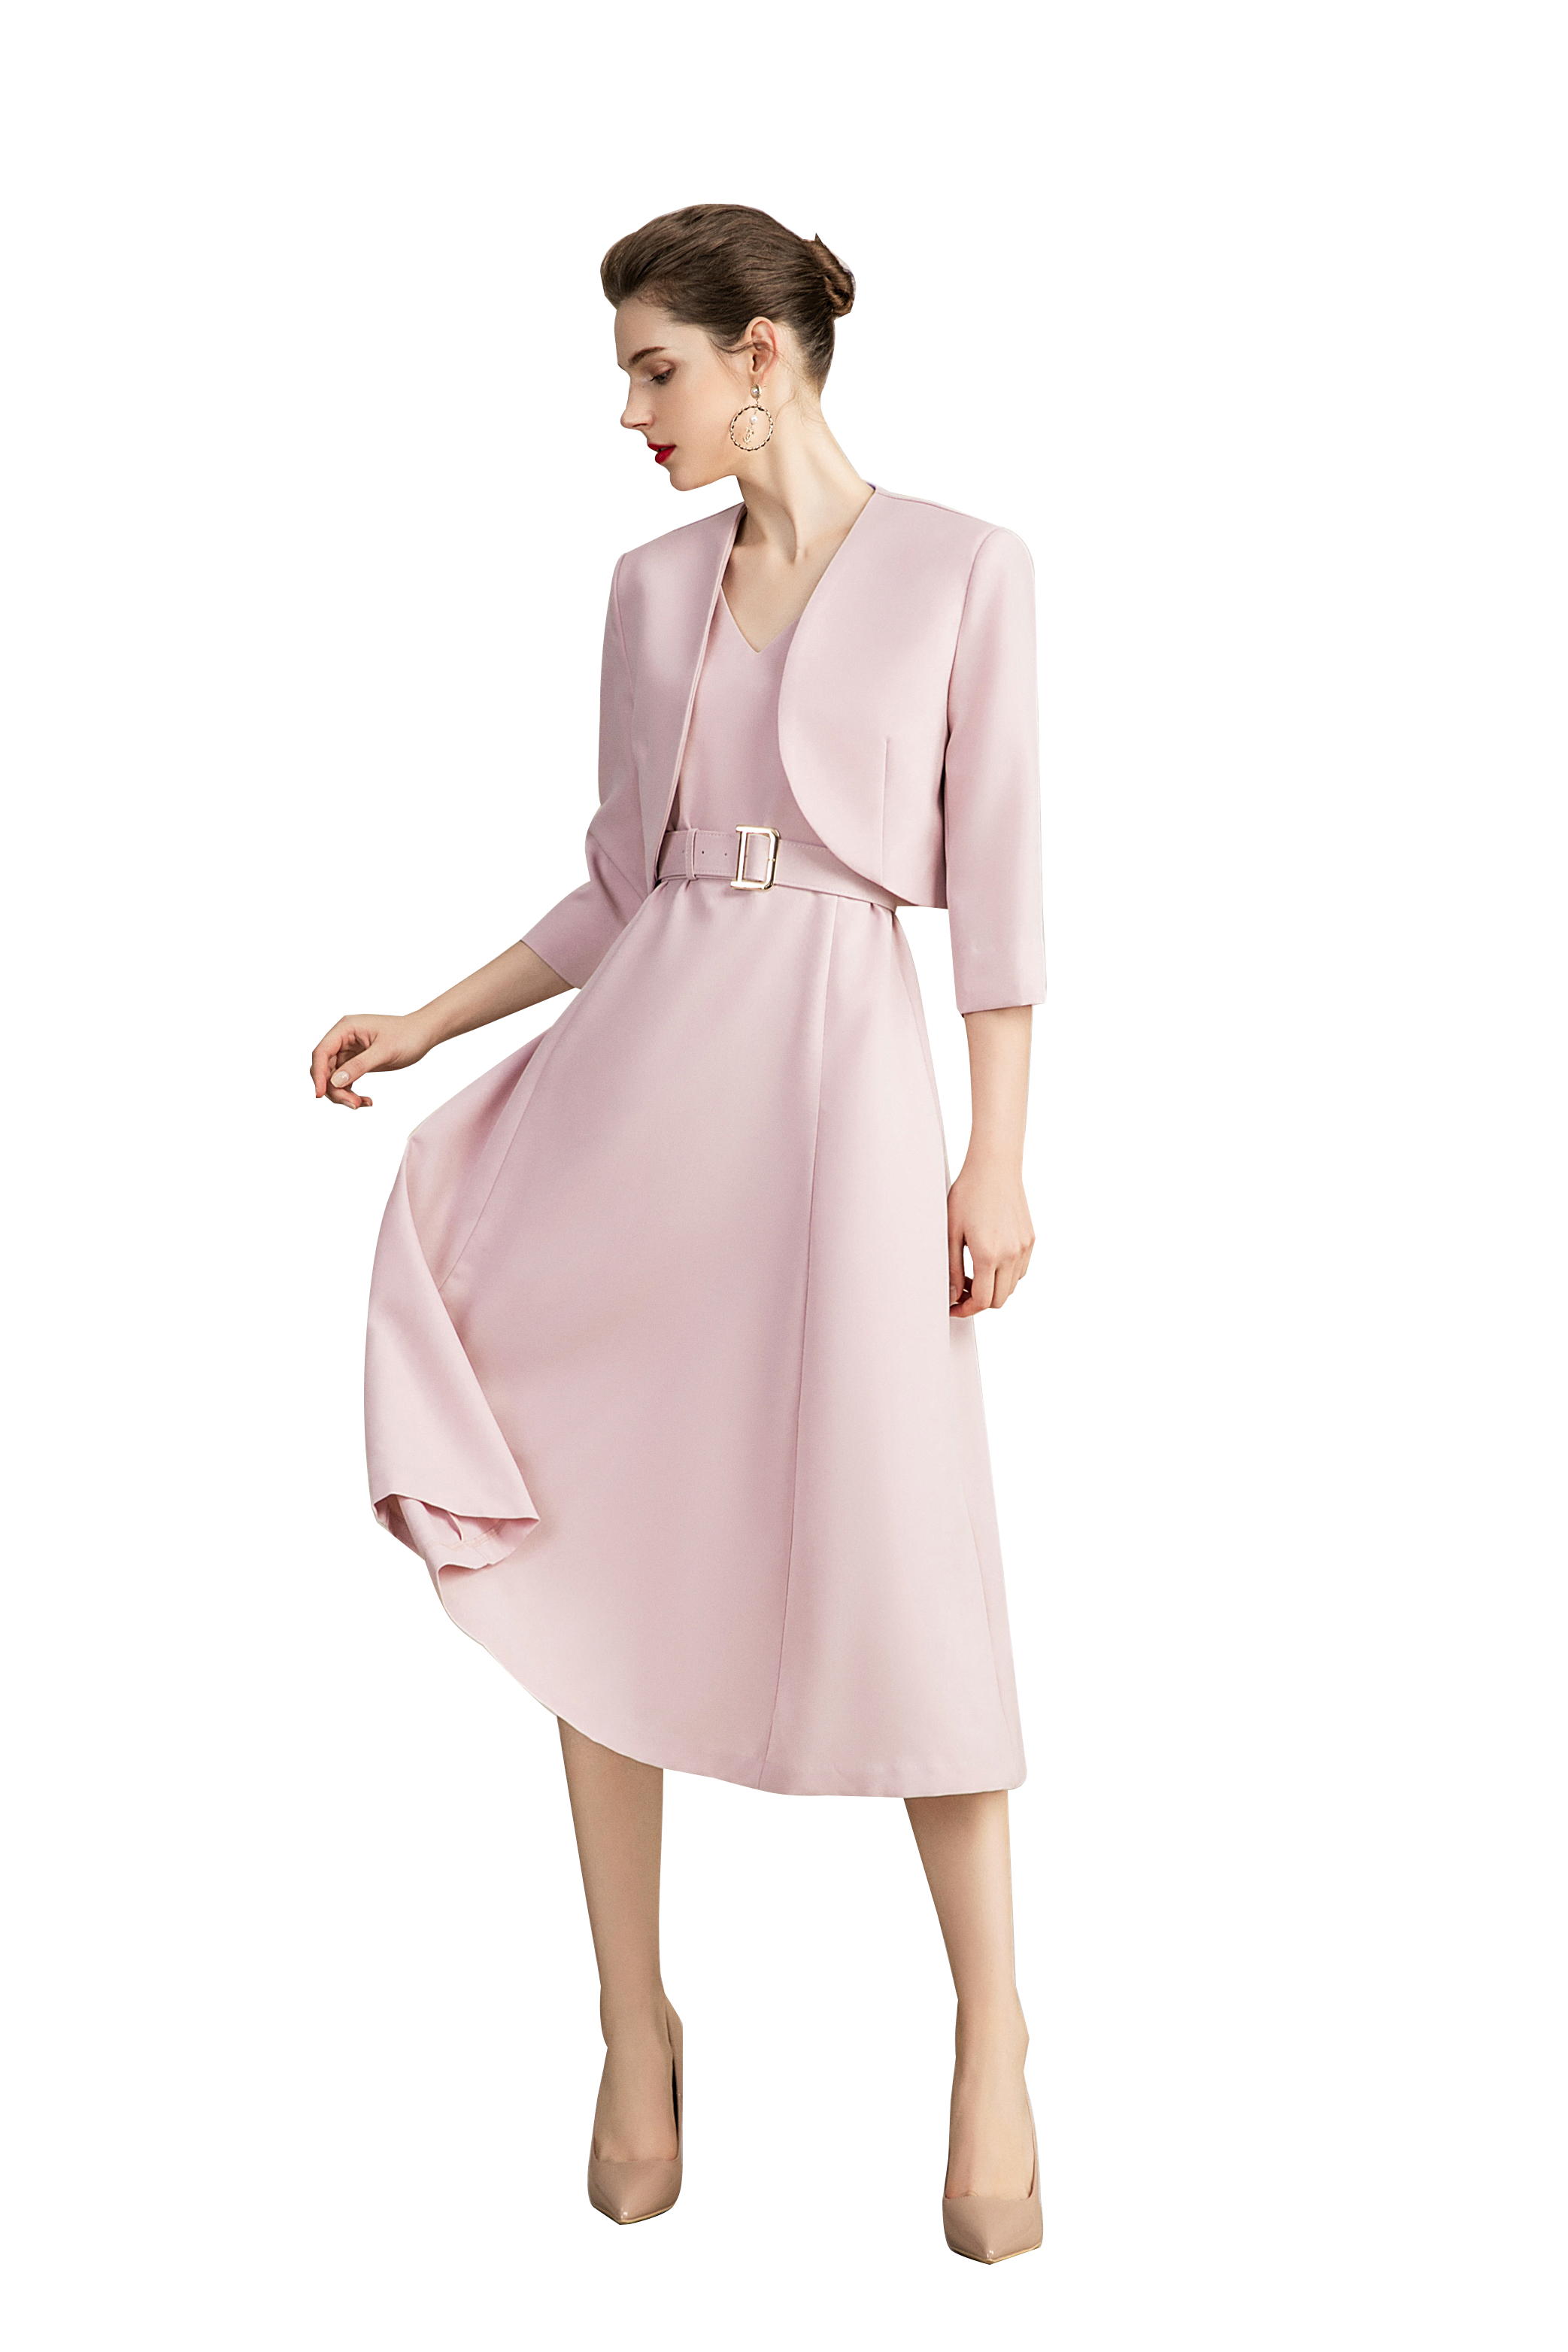 Two Piece Pink Blazer Dress Set - FashionByTeresa